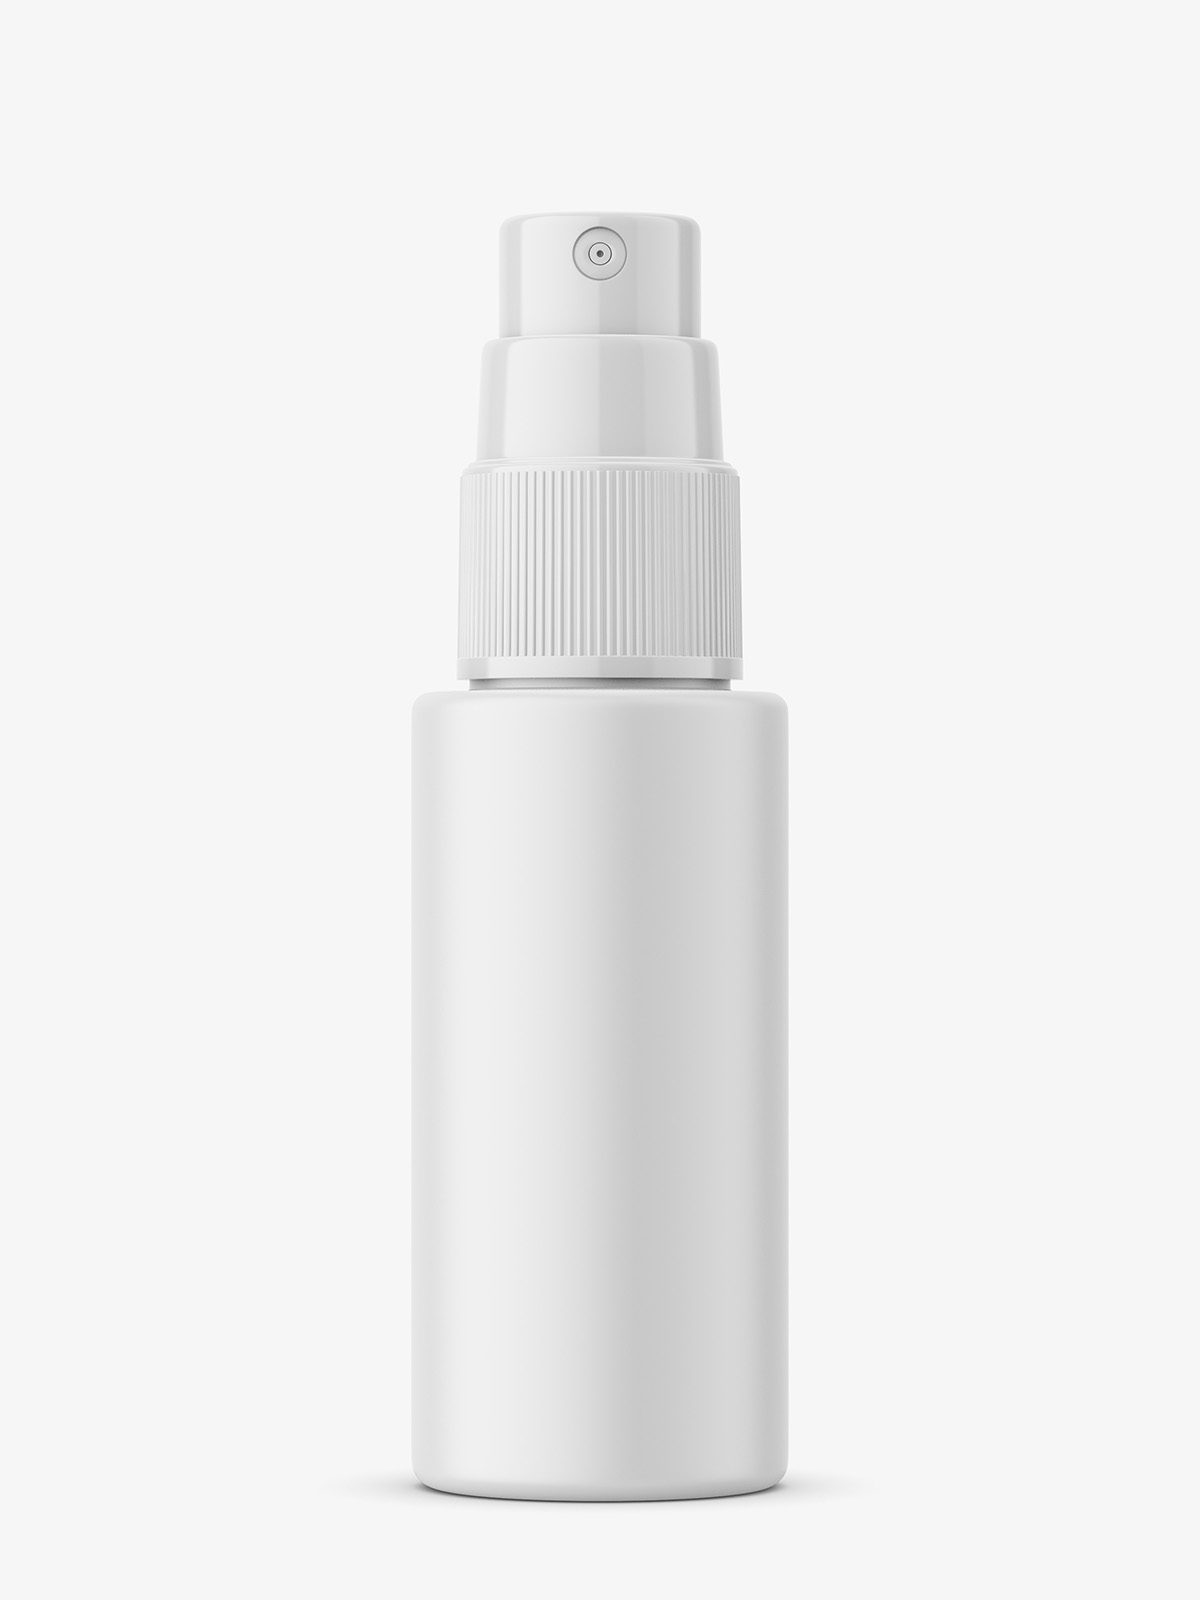 Download Mist Spray Bottle Mockup 30 Ml Smarty Mockups PSD Mockup Templates